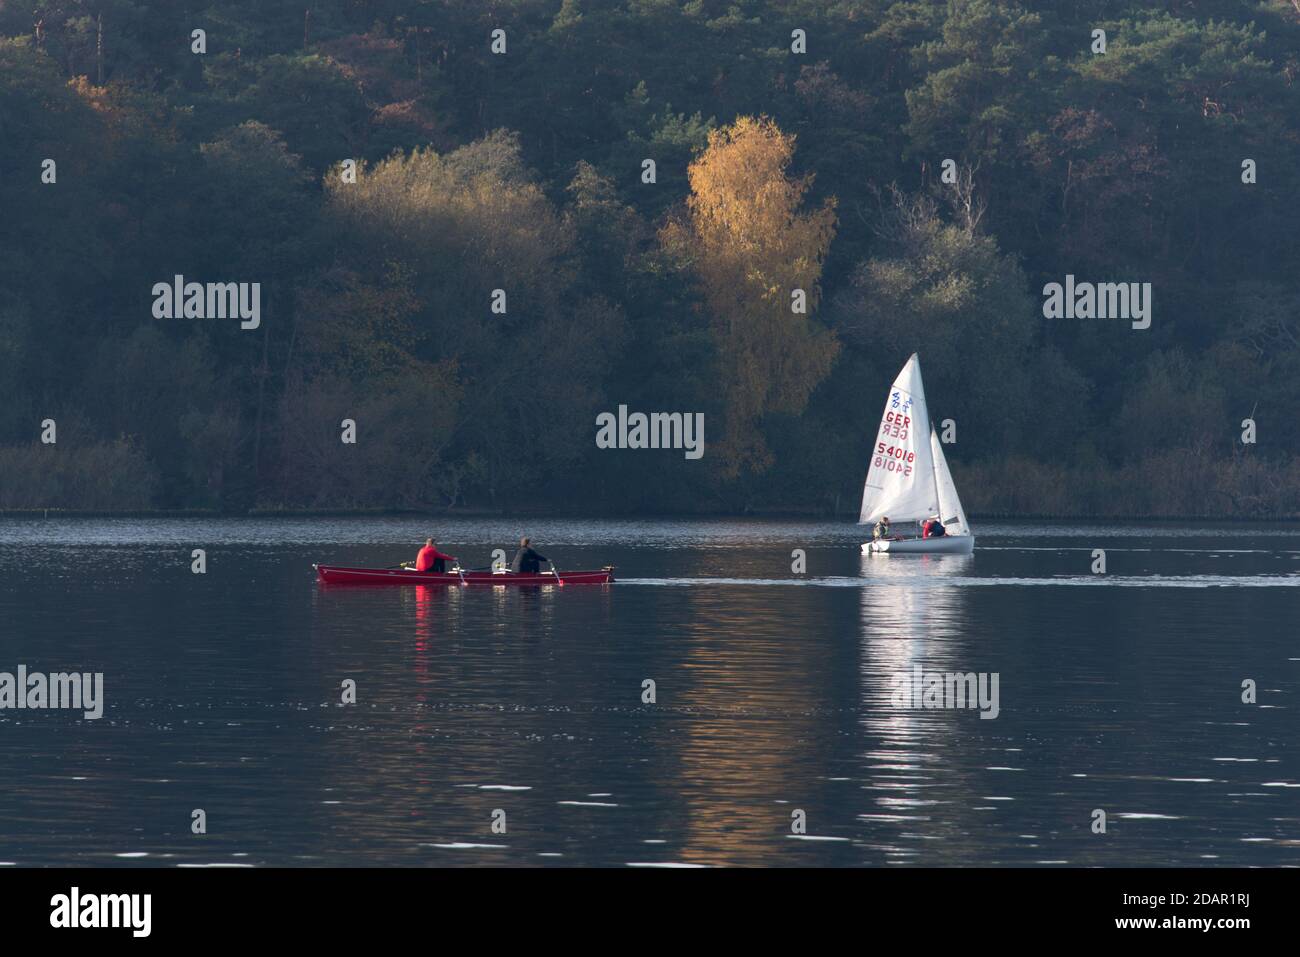 Sports toute l'année au lac Wannsee: L'aviron et la voile sont populaires même en automne sur les lacs de Berlin Banque D'Images